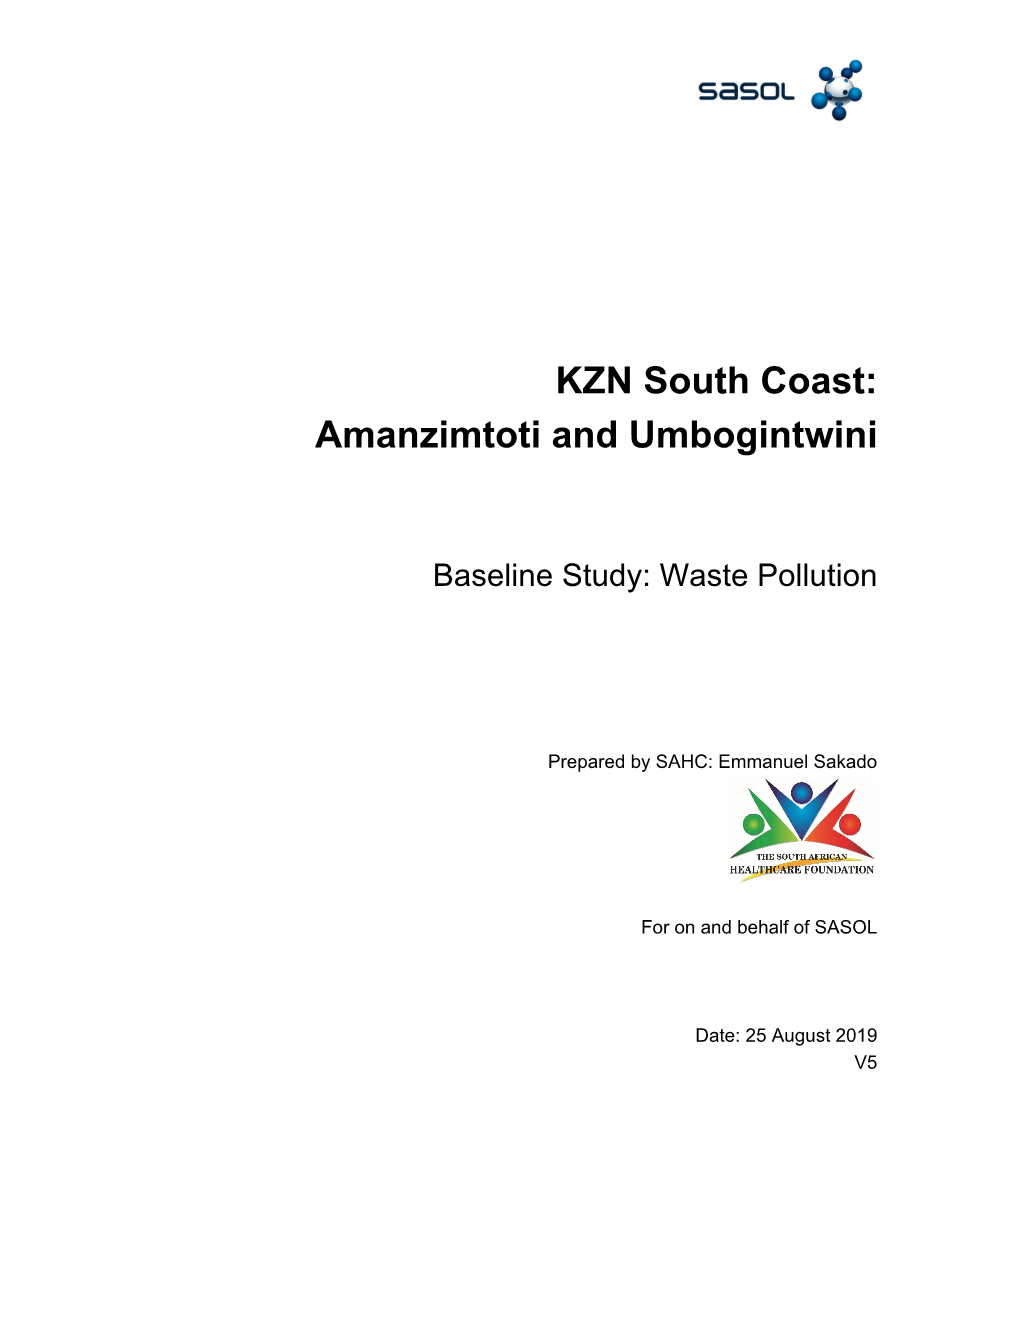 KZN South Coast: Amanzimtoti and Umbogintwini